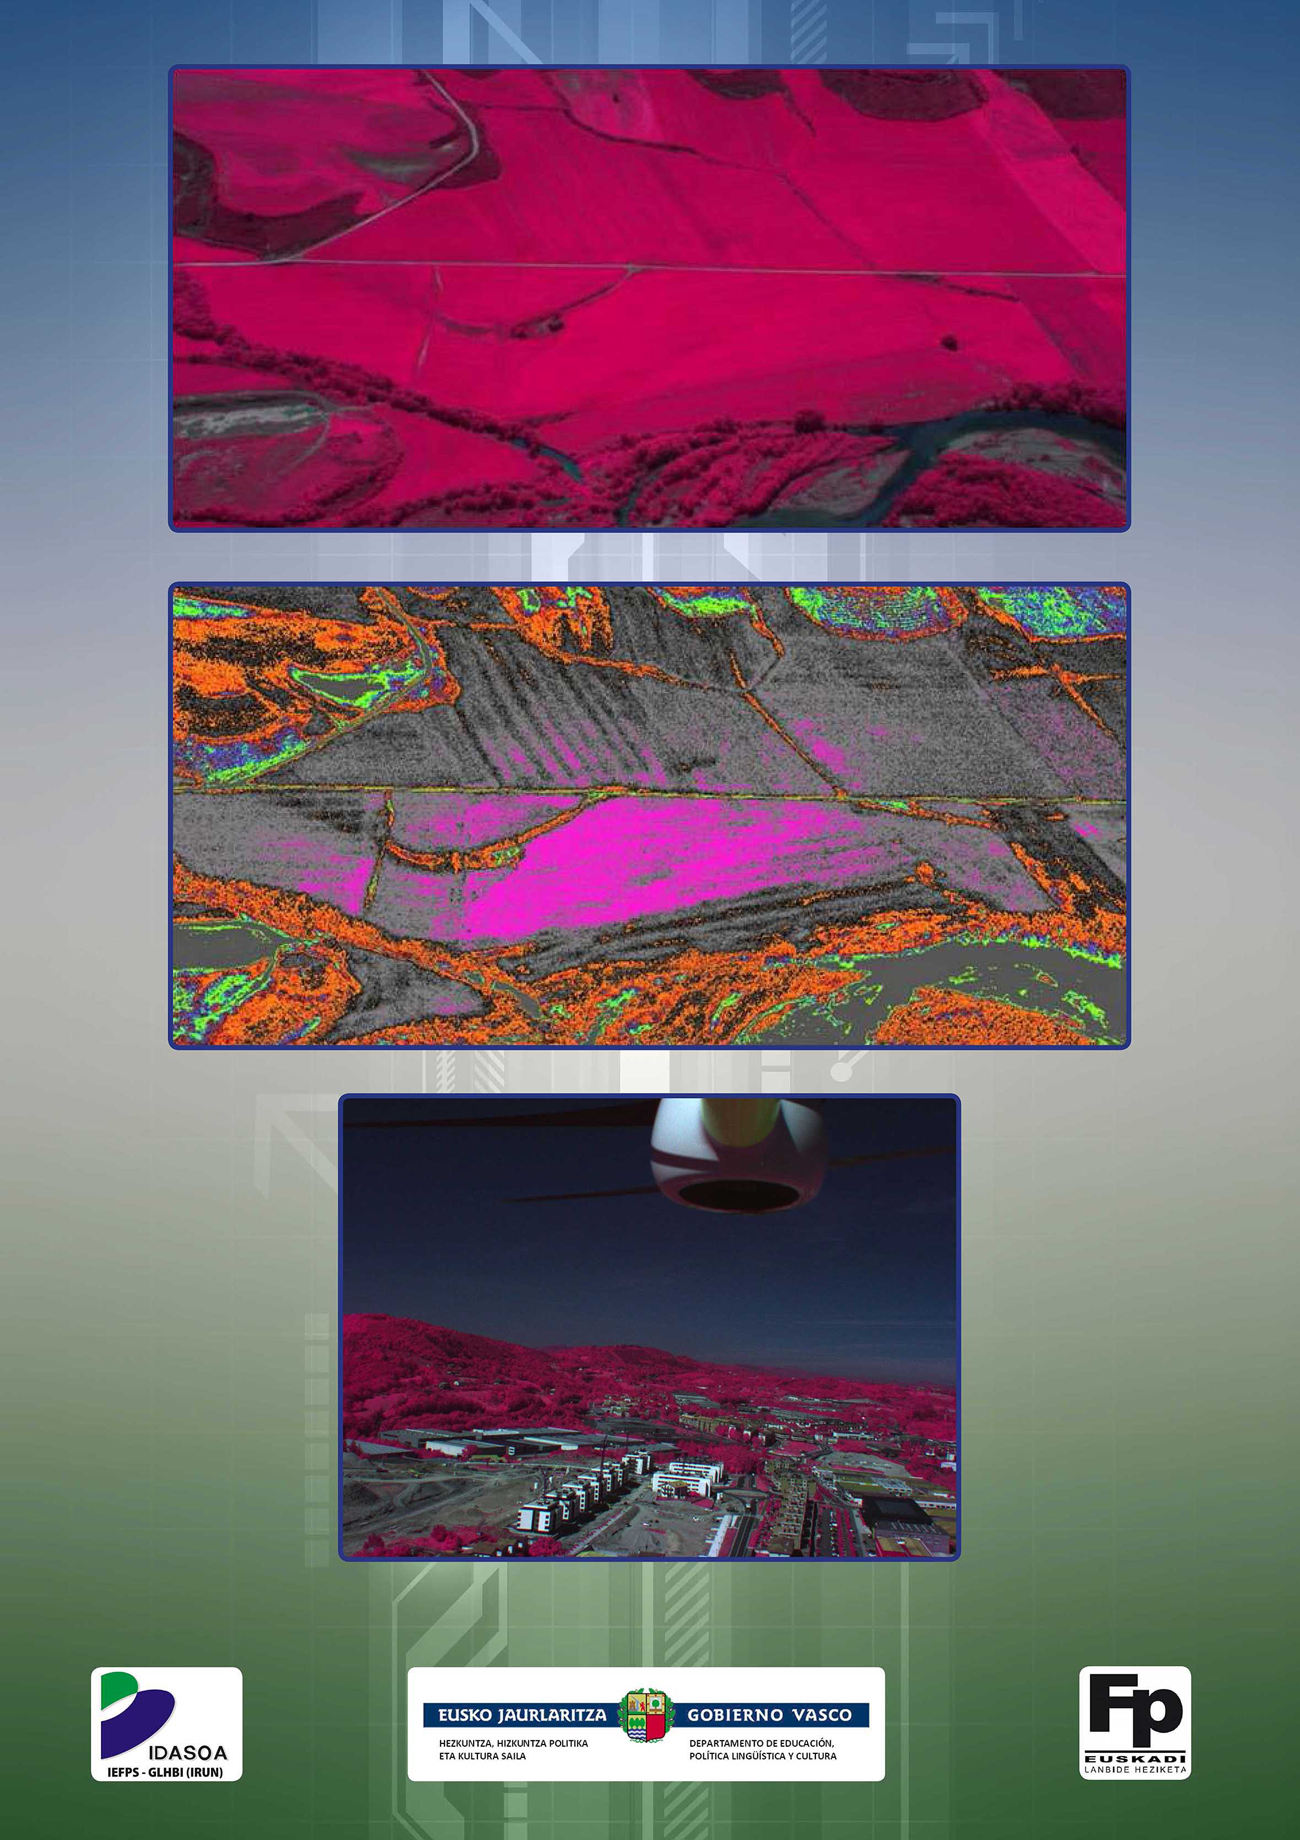 Ejemplos de aplicaciones de imágenes tomadas con cámaras multiespectrales